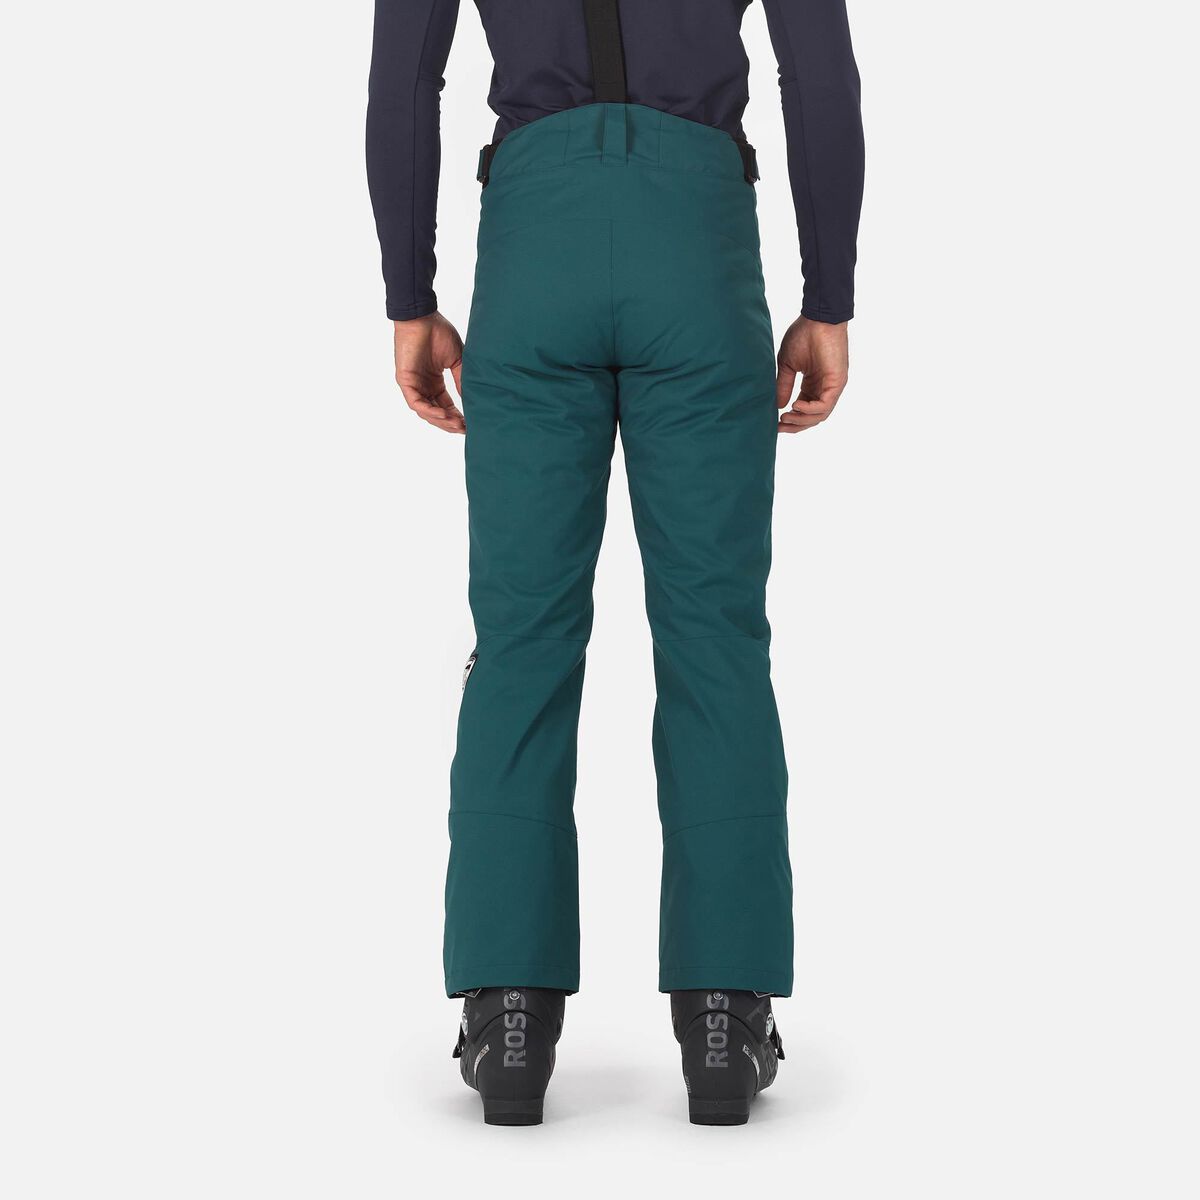 Rossignol Men's Classique Ski Pants, Ski Pants Carmin